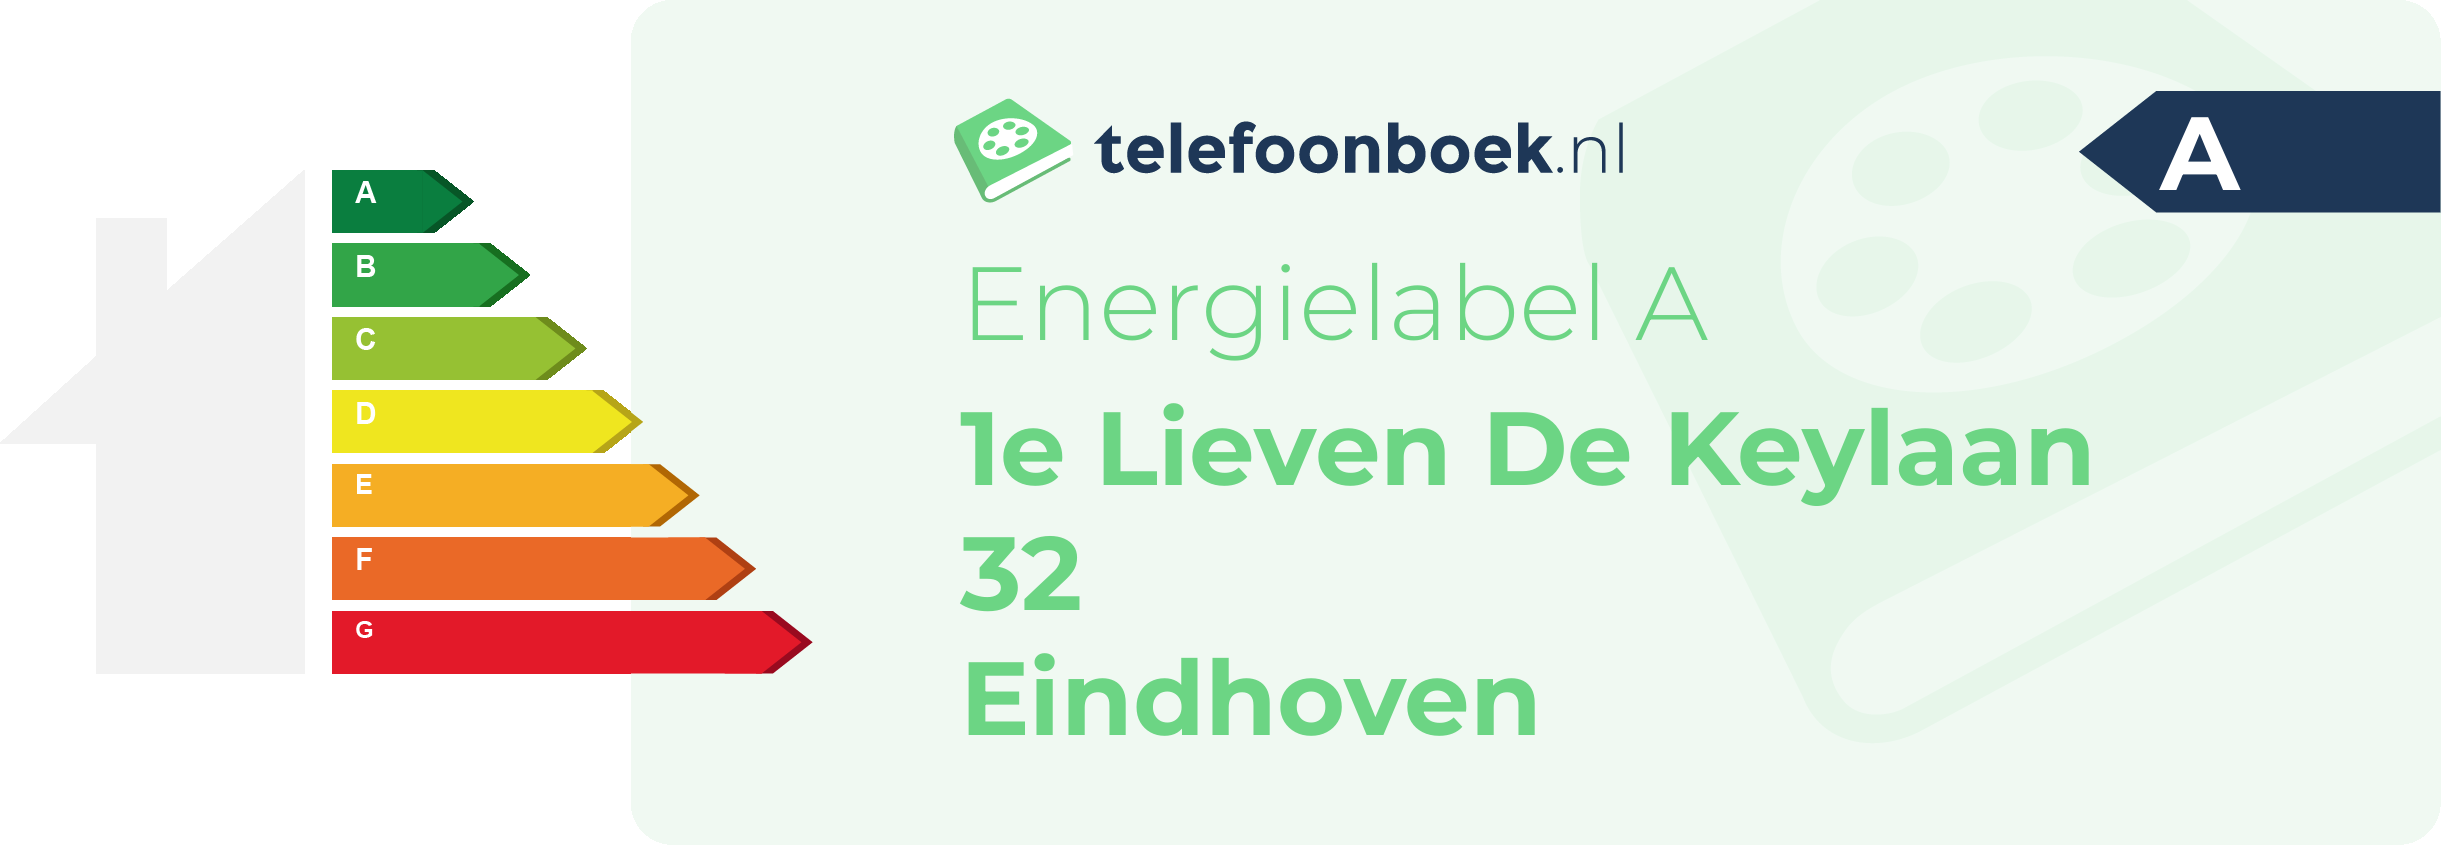 Energielabel 1e Lieven De Keylaan 32 Eindhoven